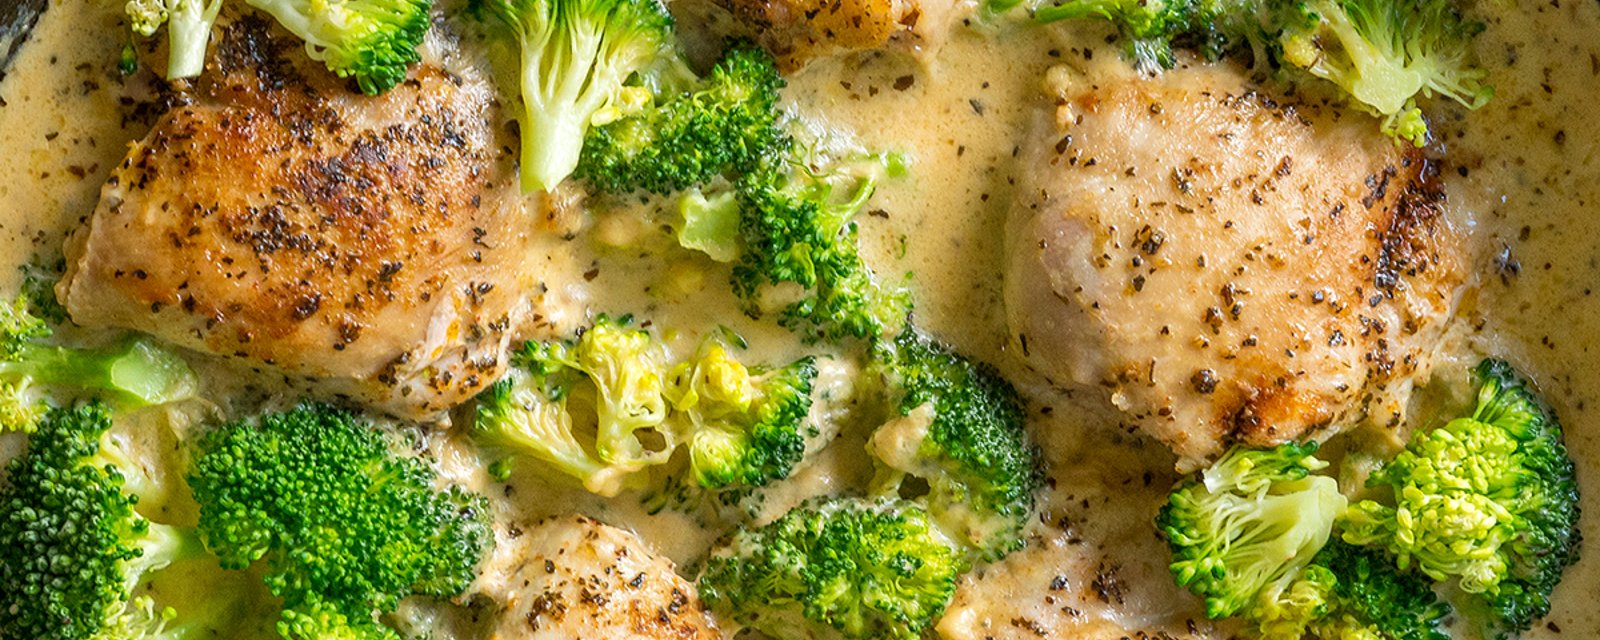 Poulet et brocoli, c'est devenu l'une de mes recettes préférées!